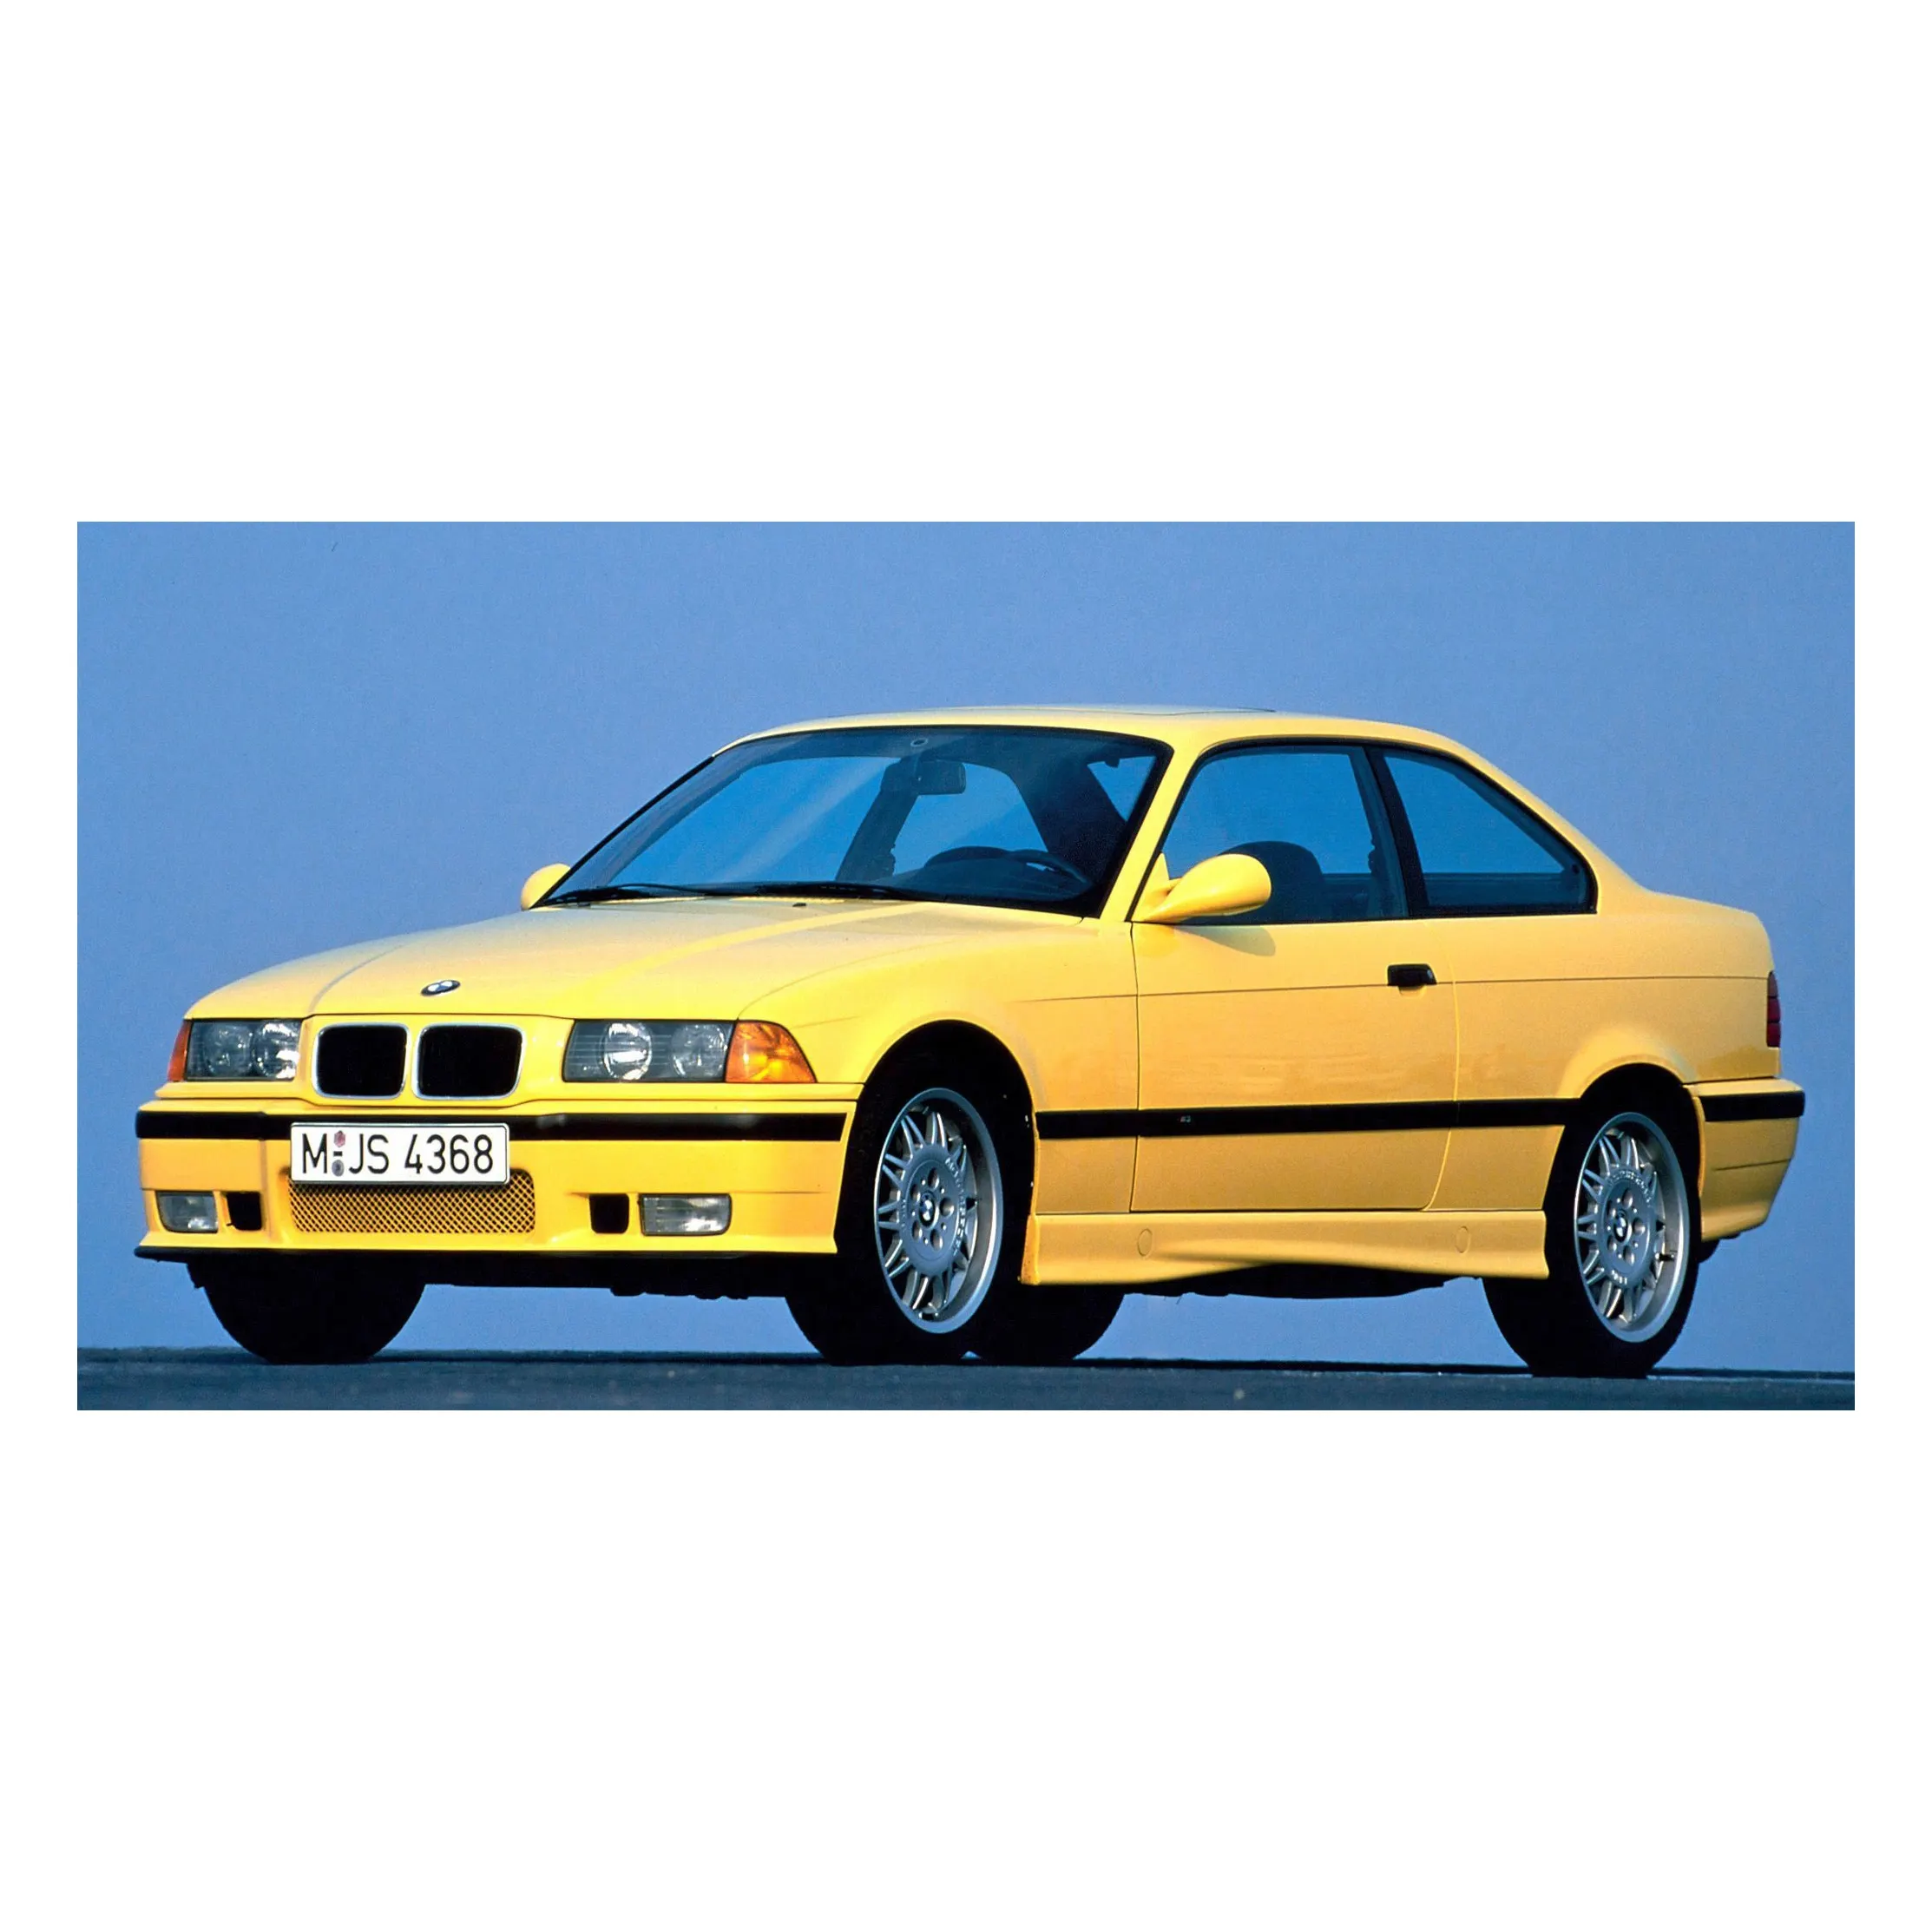 2019 사용 BMW M3 캐나다 판 구동 39000 마일 (가격 하락)